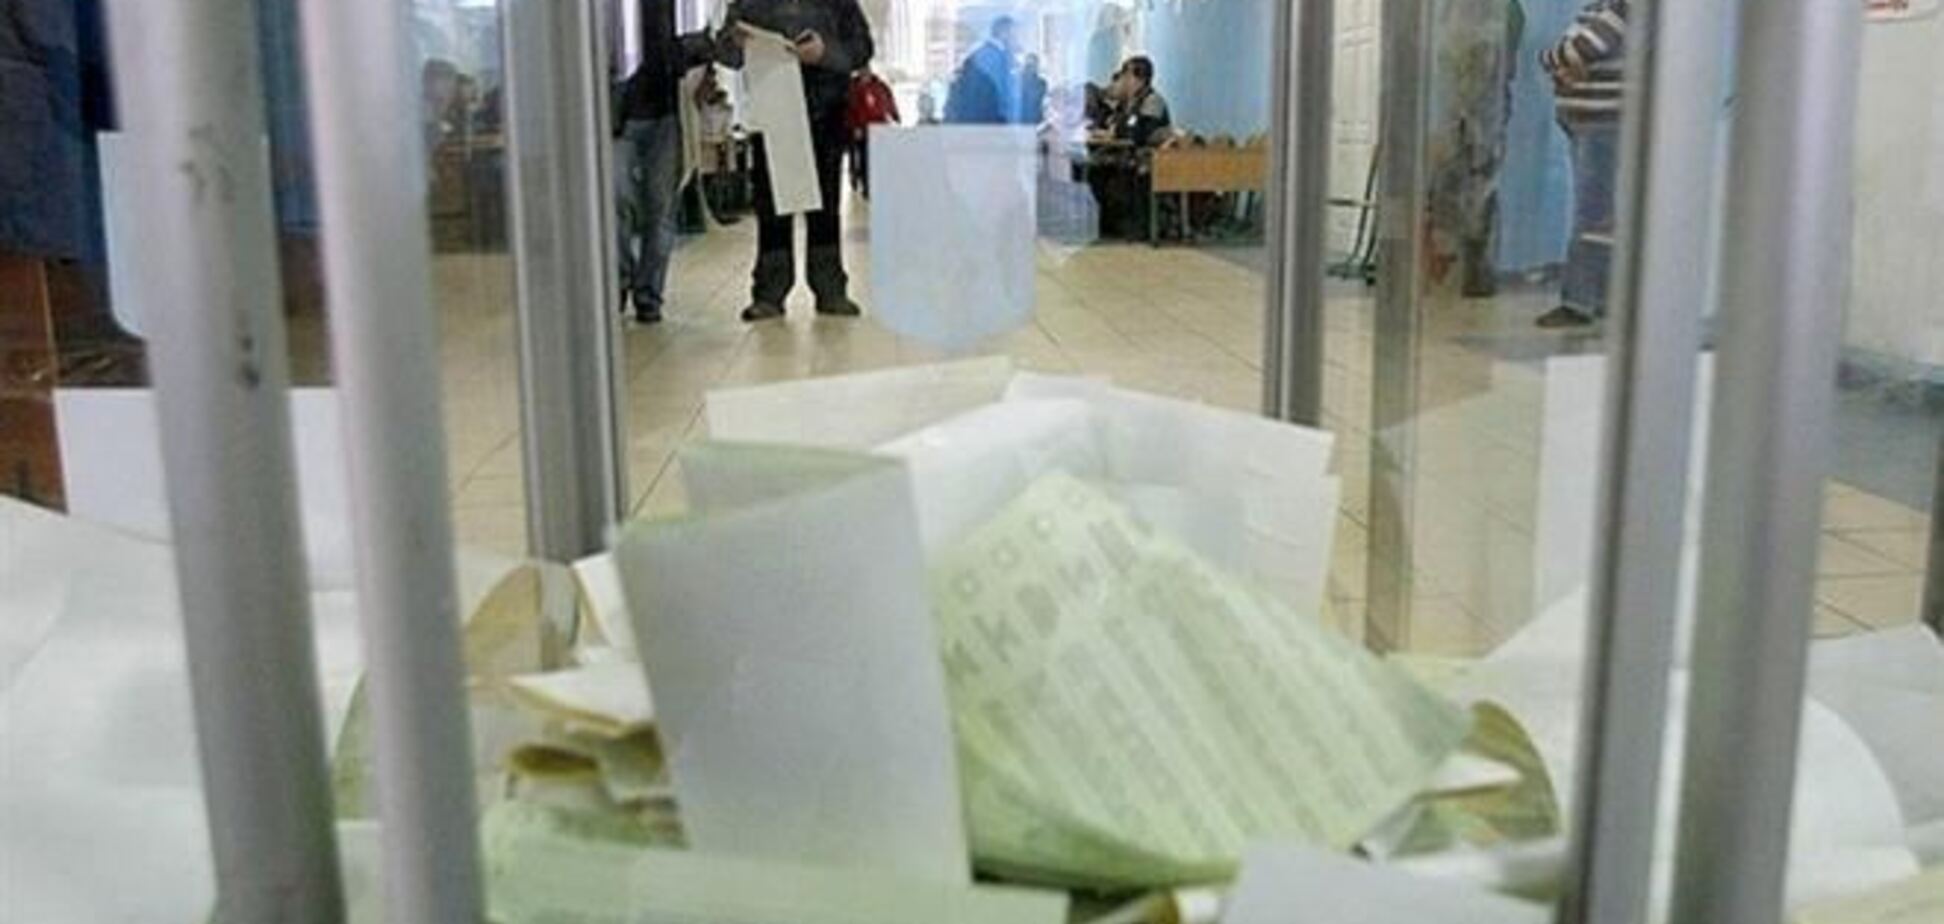 Підрахунок голосів на довиборах проходить штатно - голова ЦВК 